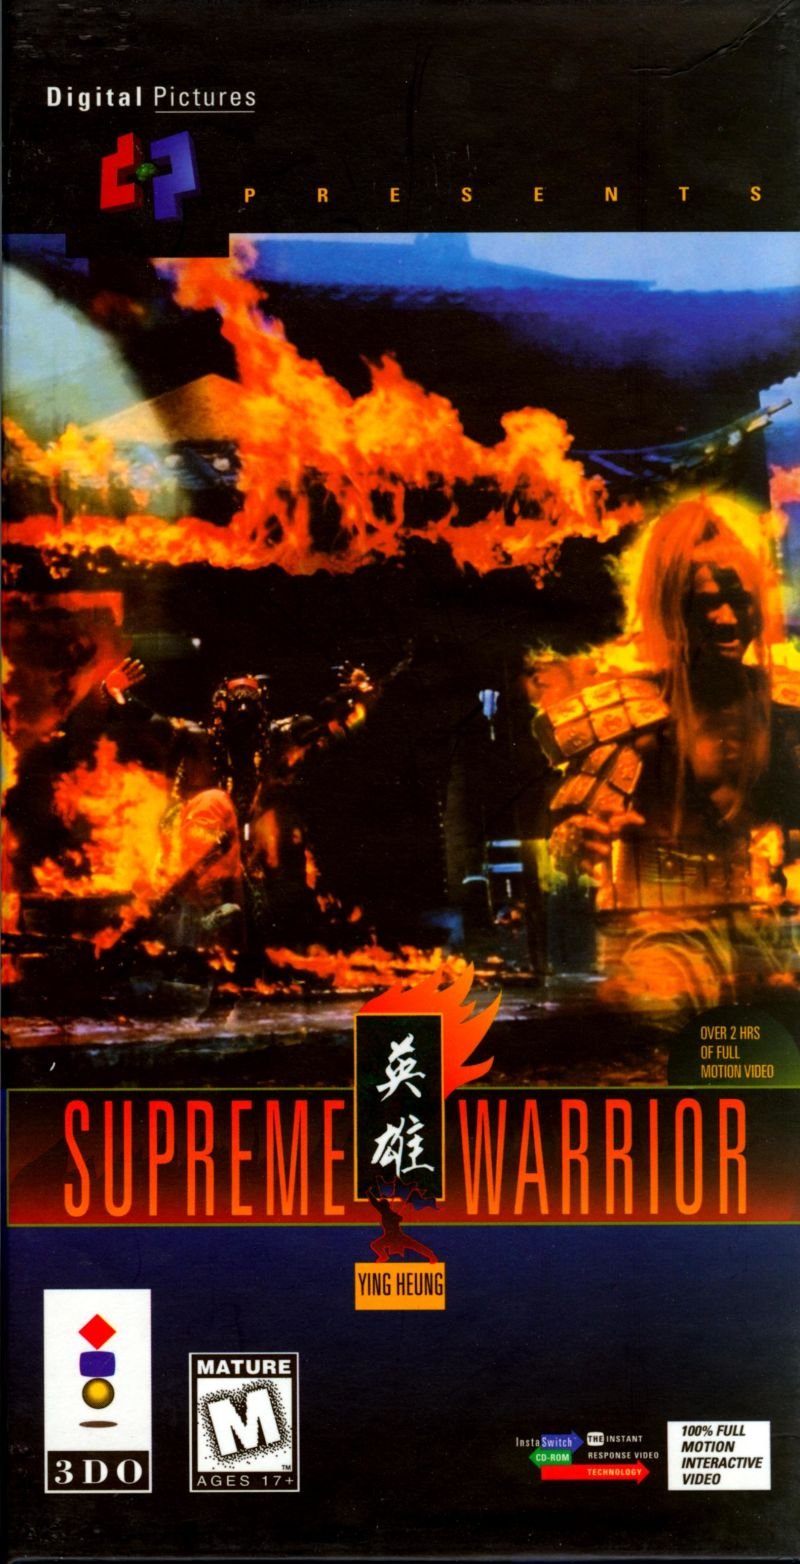 Supreme Warrior: Ying Heung